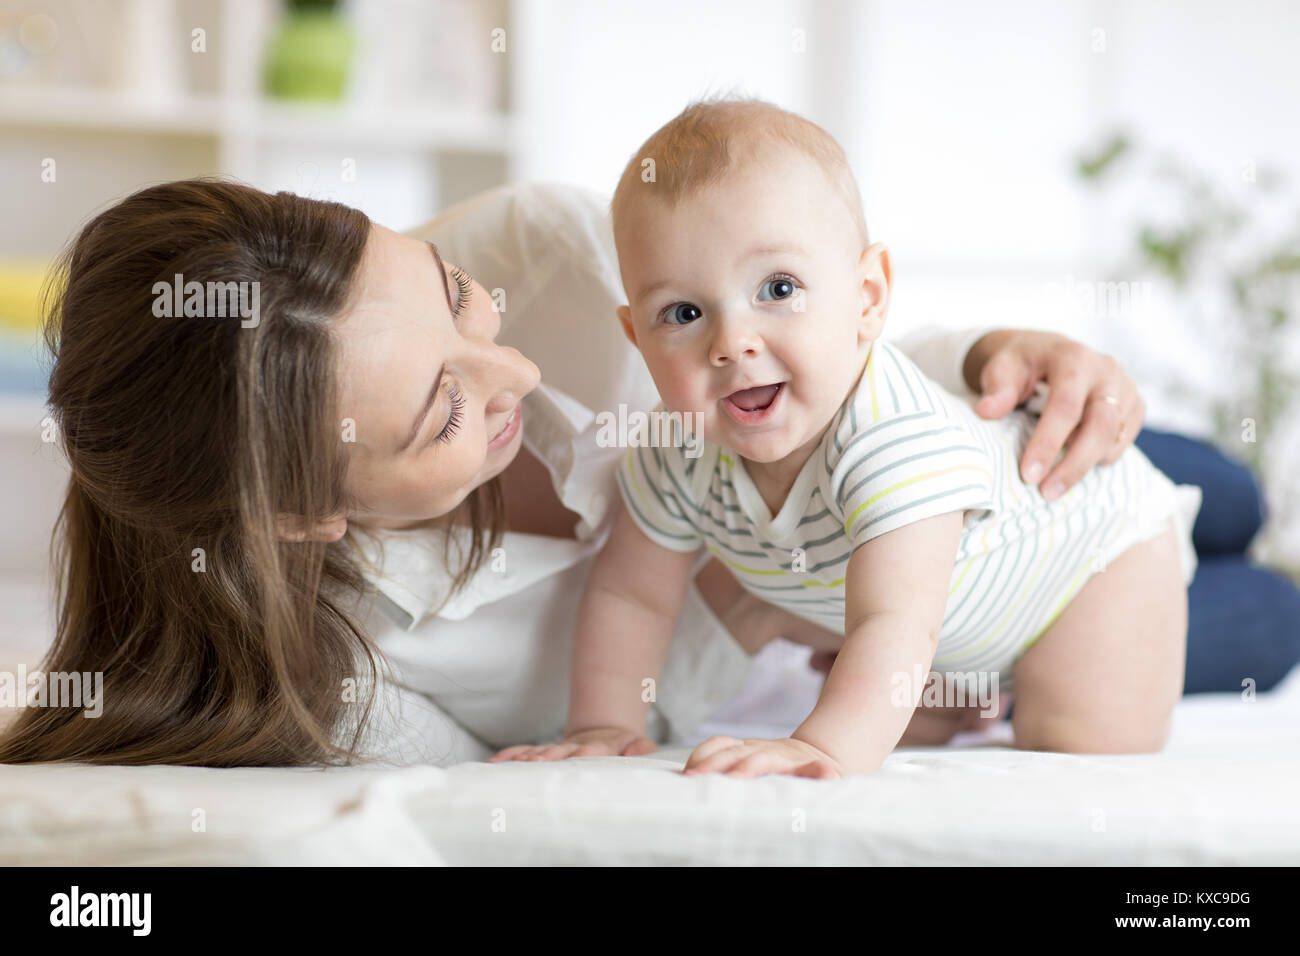 La mamá y el bebé niño jugando en la soleada habitación. Padre y niño pequeño niño relajado en casa. Familia divirtiéndose juntos. Foto de stock